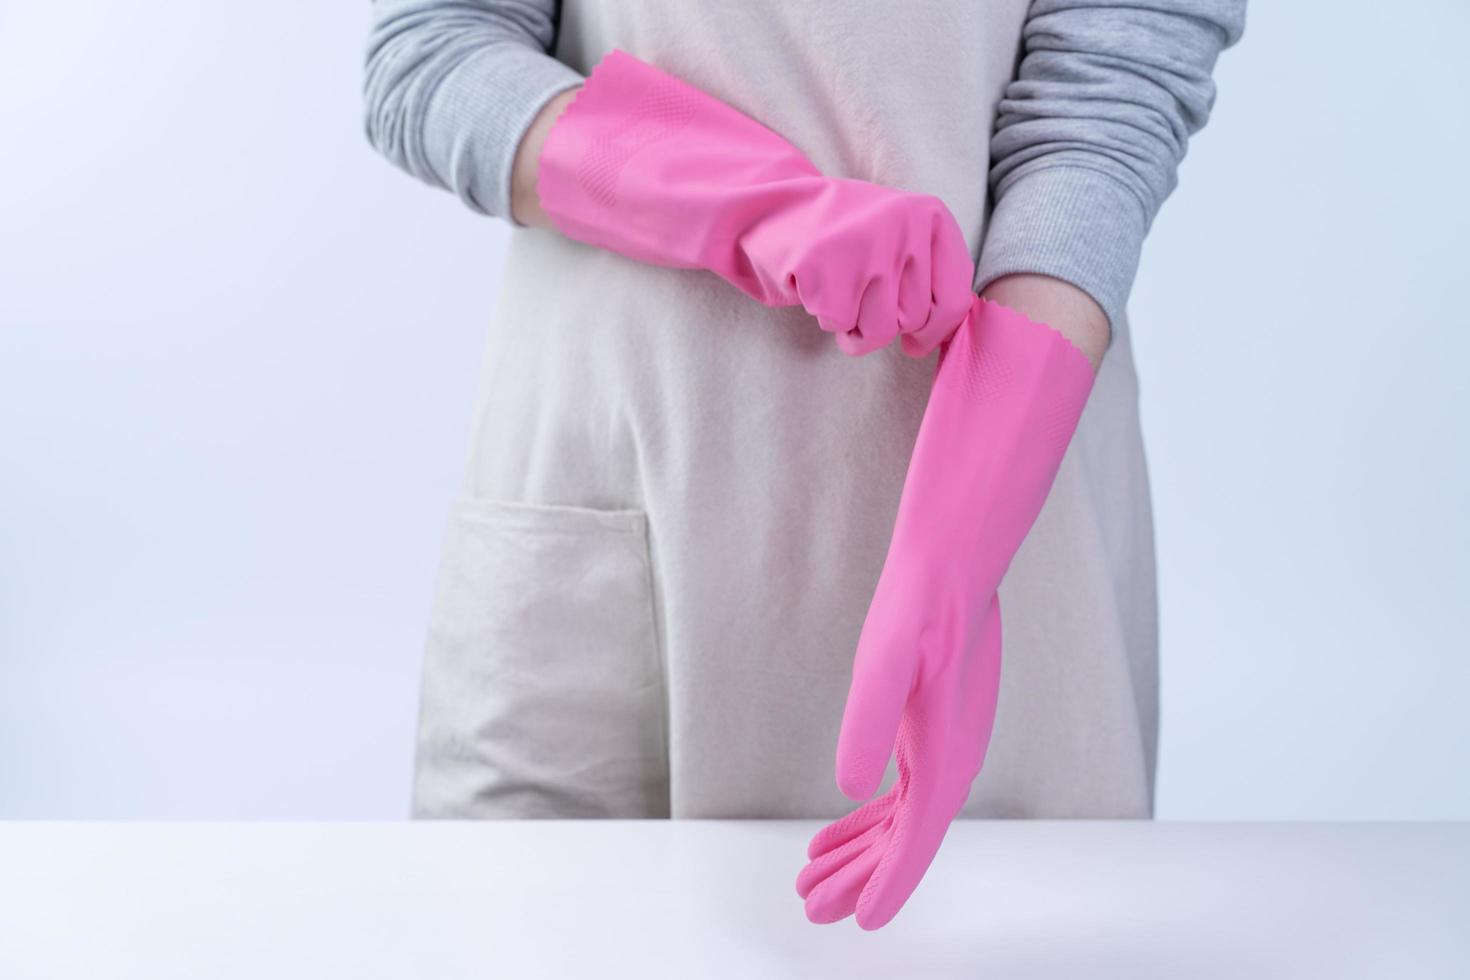 giovane donna governante in grembiule indossa guanti rosa per pulire il tavolo, concetto di prevenzione dell'infezione da virus, servizio di pulizia, primo piano. foto